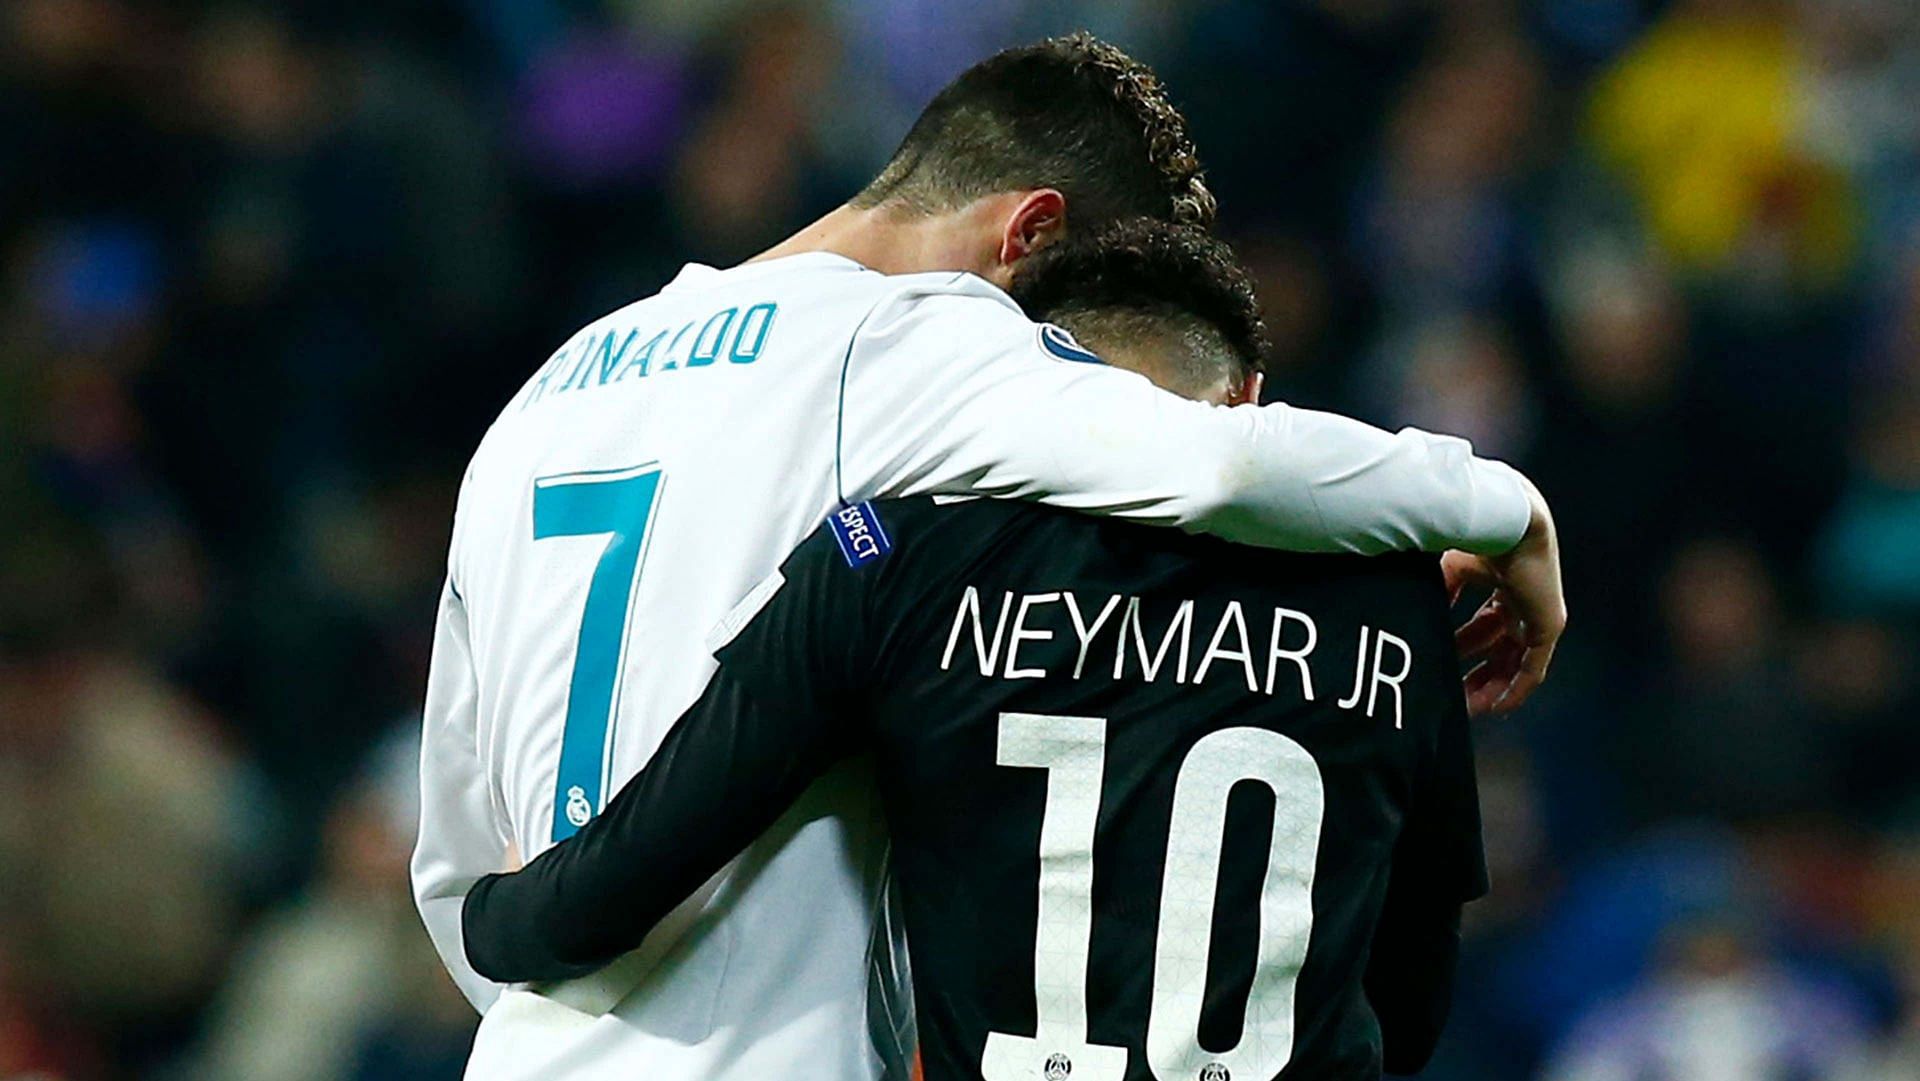 Neymar (right) was full of praise for Ronaldo.